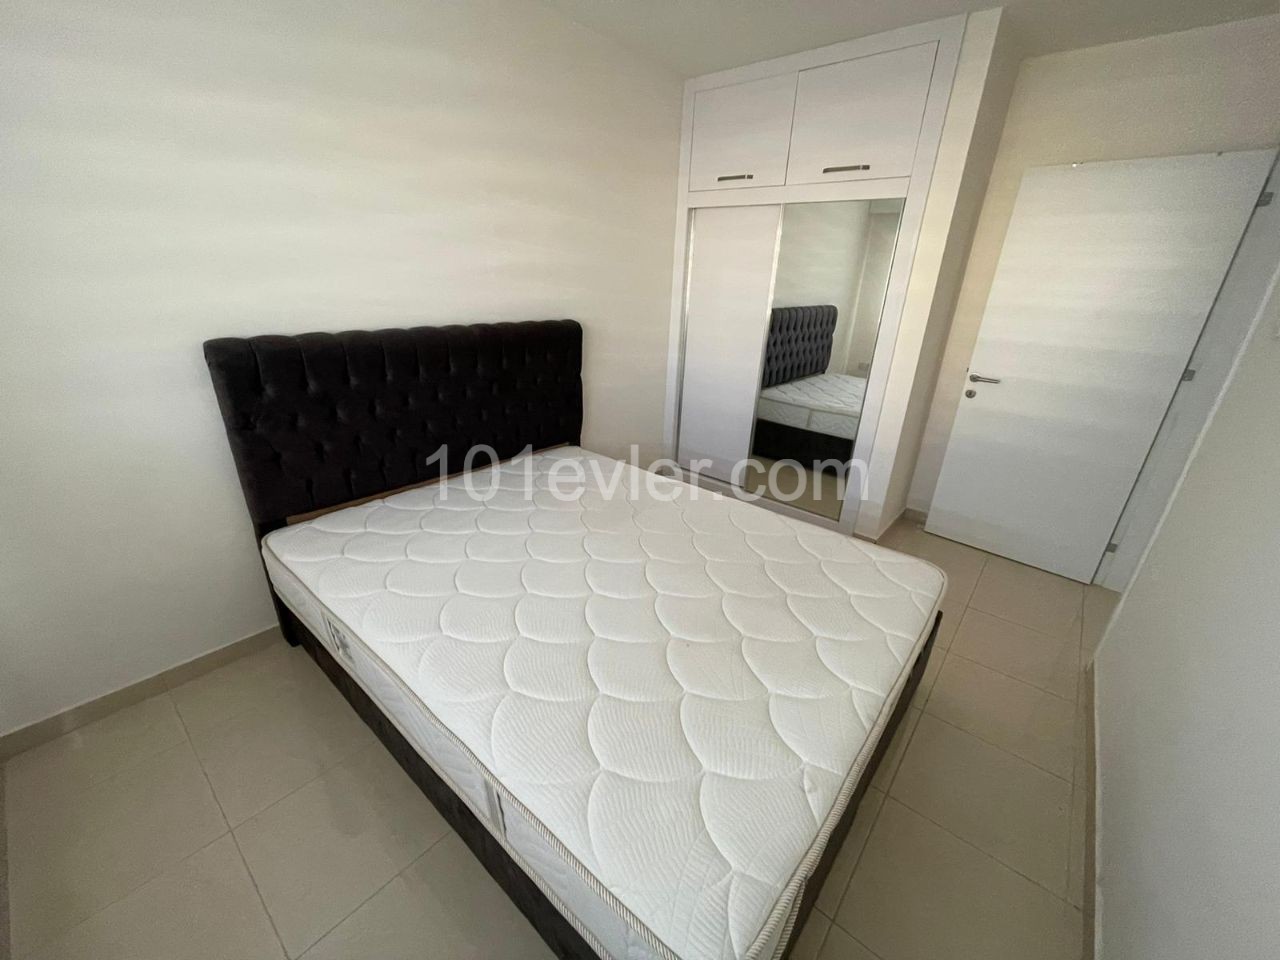 1+1 möblierte Wohnung zum Verkauf in Nordzypern,Famagusta,Stadtzentrum ** 